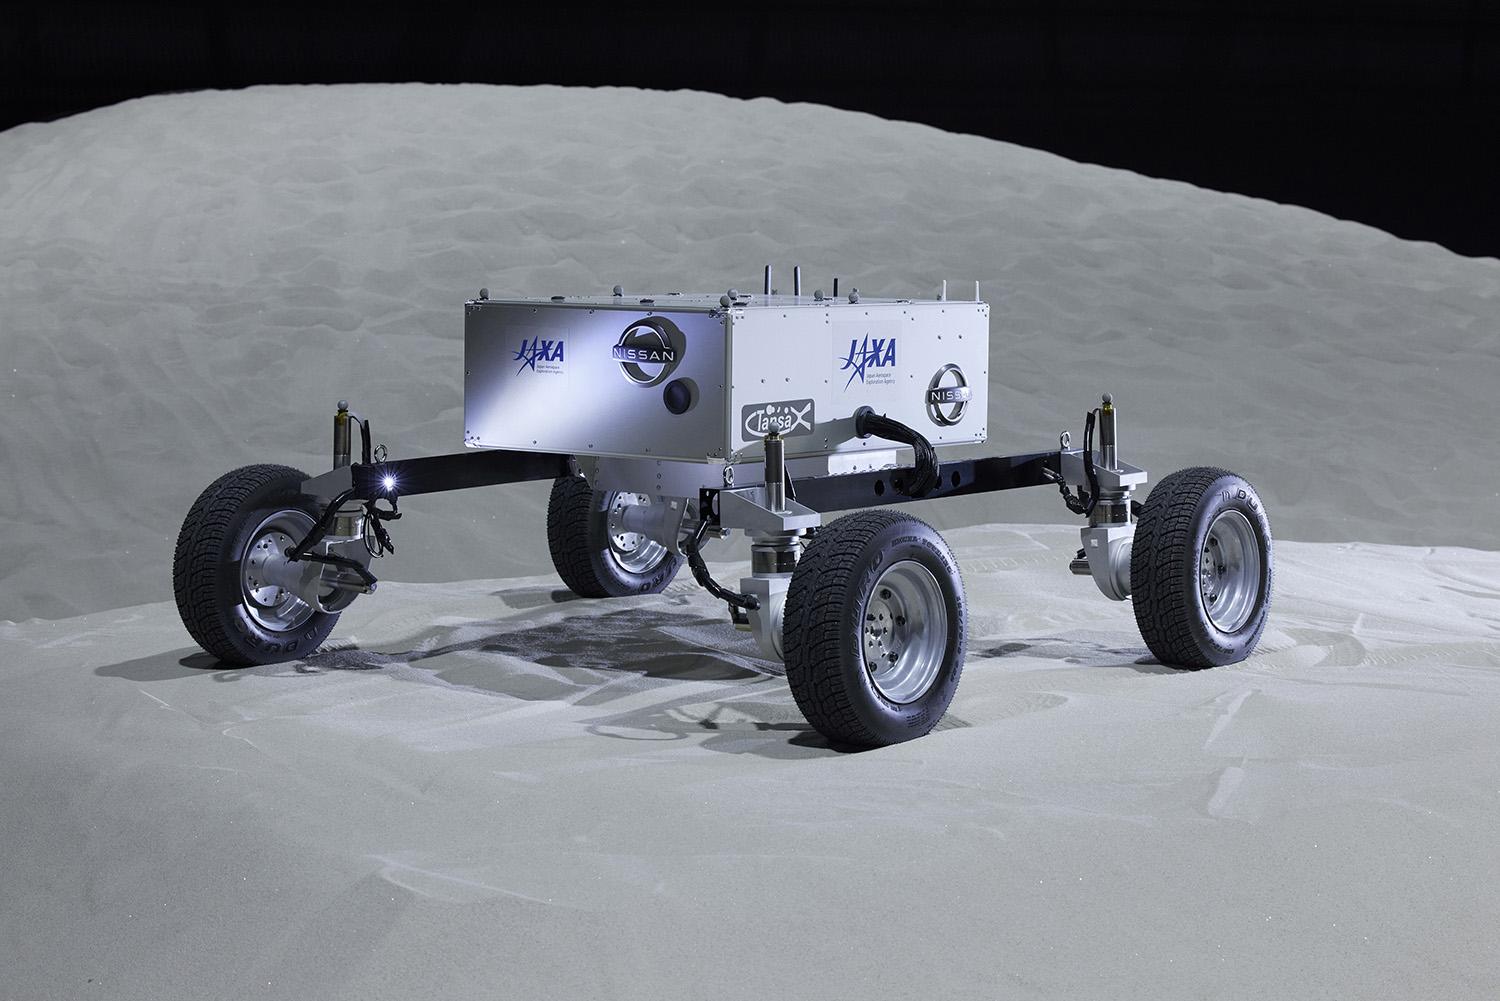 JAXAと日産が共同開発した月面探査車両ローバのスタイリング